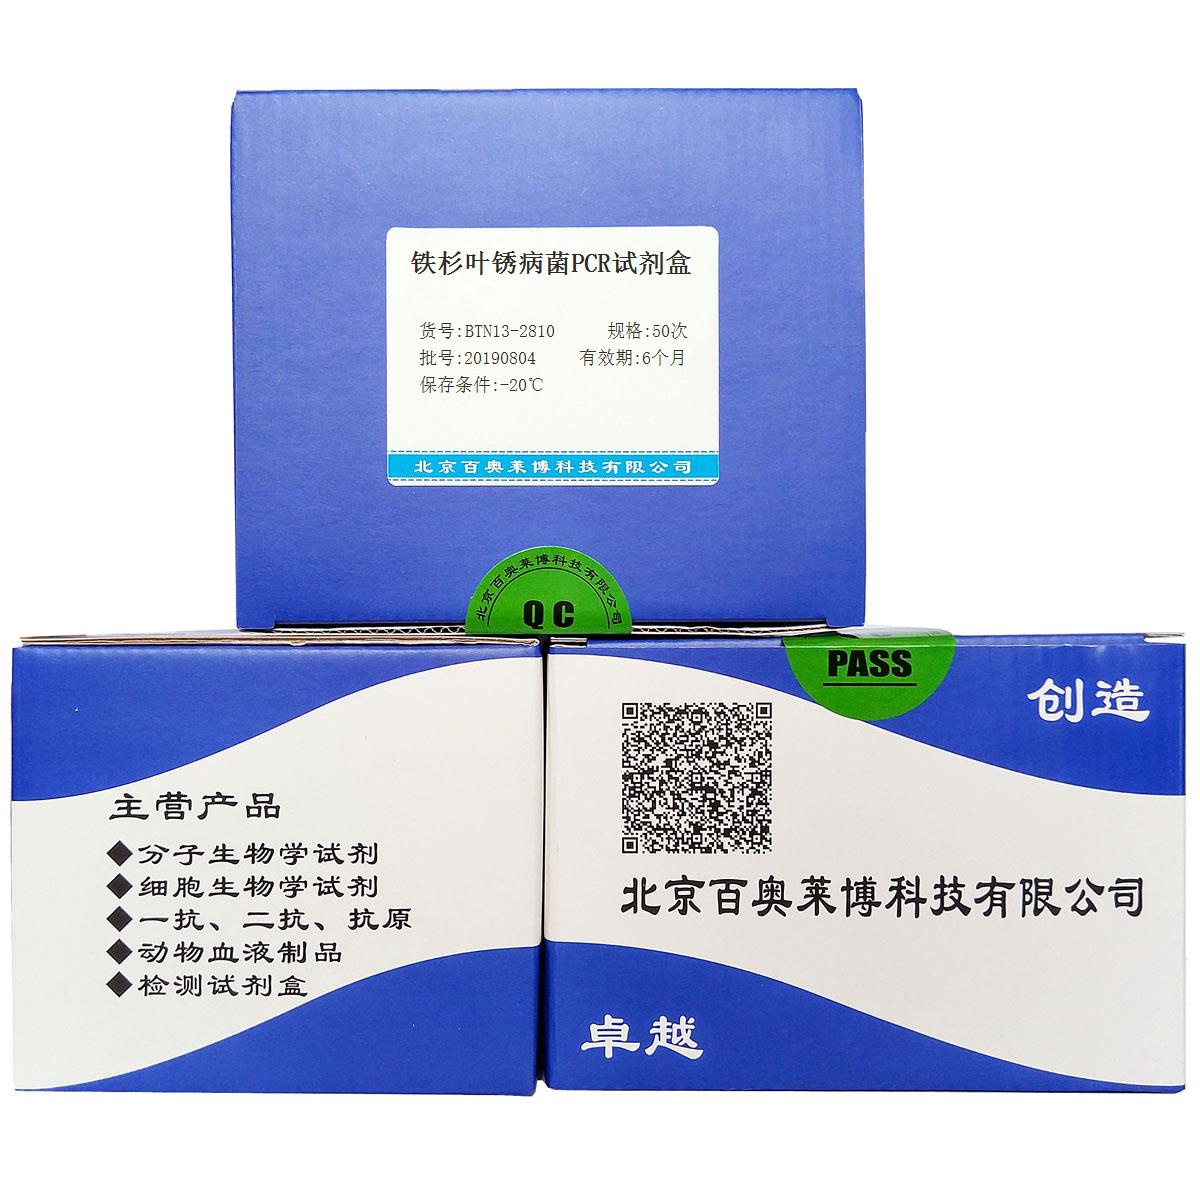 铁杉叶锈病菌PCR试剂盒北京品牌